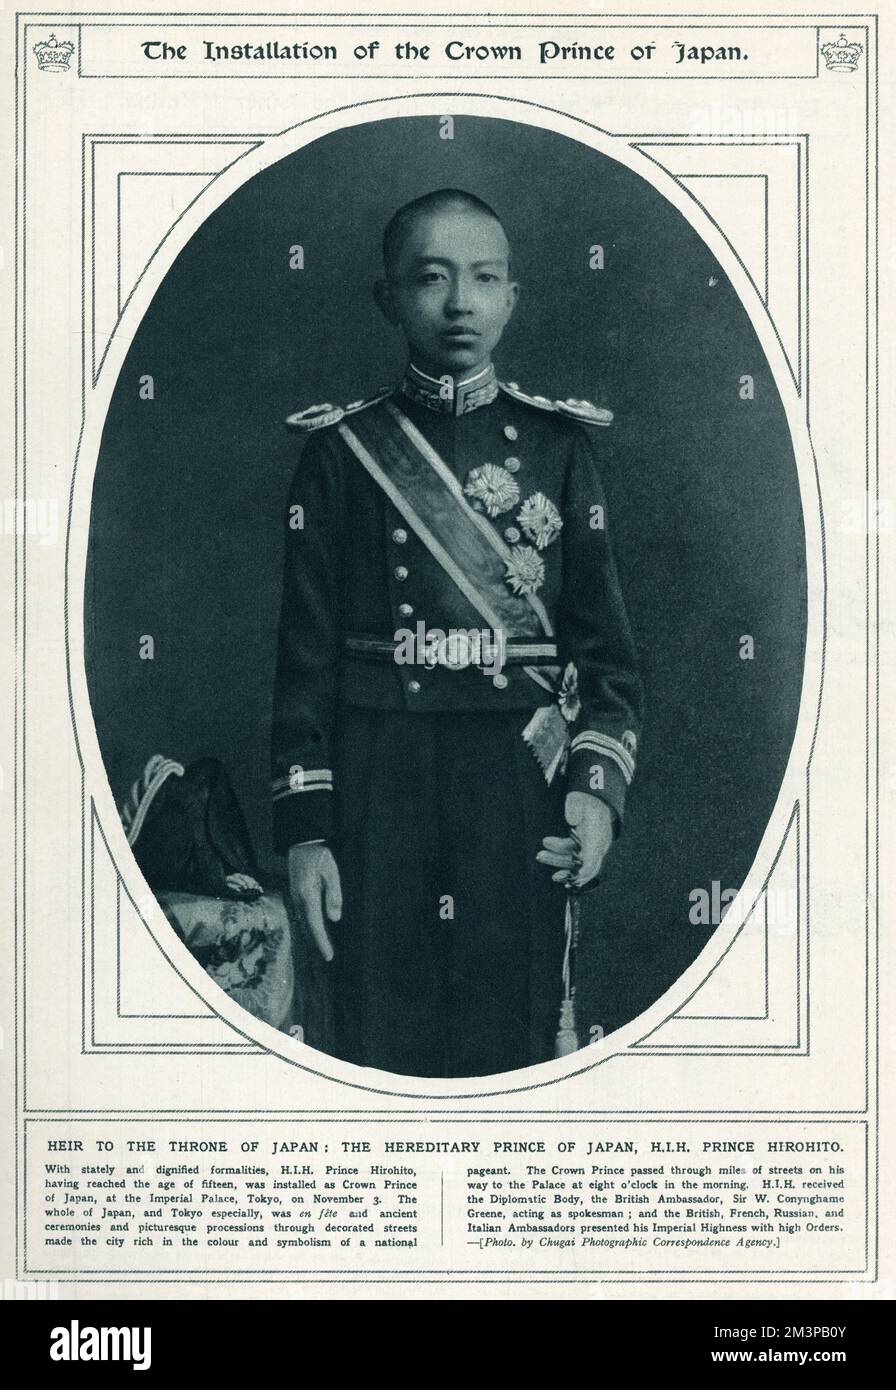 Principe del Giappone S.I.H Principe Hirohito (1901 - 1989), 124th Imperatore del Giappone secondo l'ordine tradizionale, regnante dal dicembre 1926, fino alla sua morte nel 1989. La fotografia qui mostrata, che ha raggiunto l'età di quindici anni, fu installata come Principe della Corona del Giappone, presso il Palazzo Imperiale di Tokyo, il 3rd novembre 1916. Data: 1916 Foto Stock